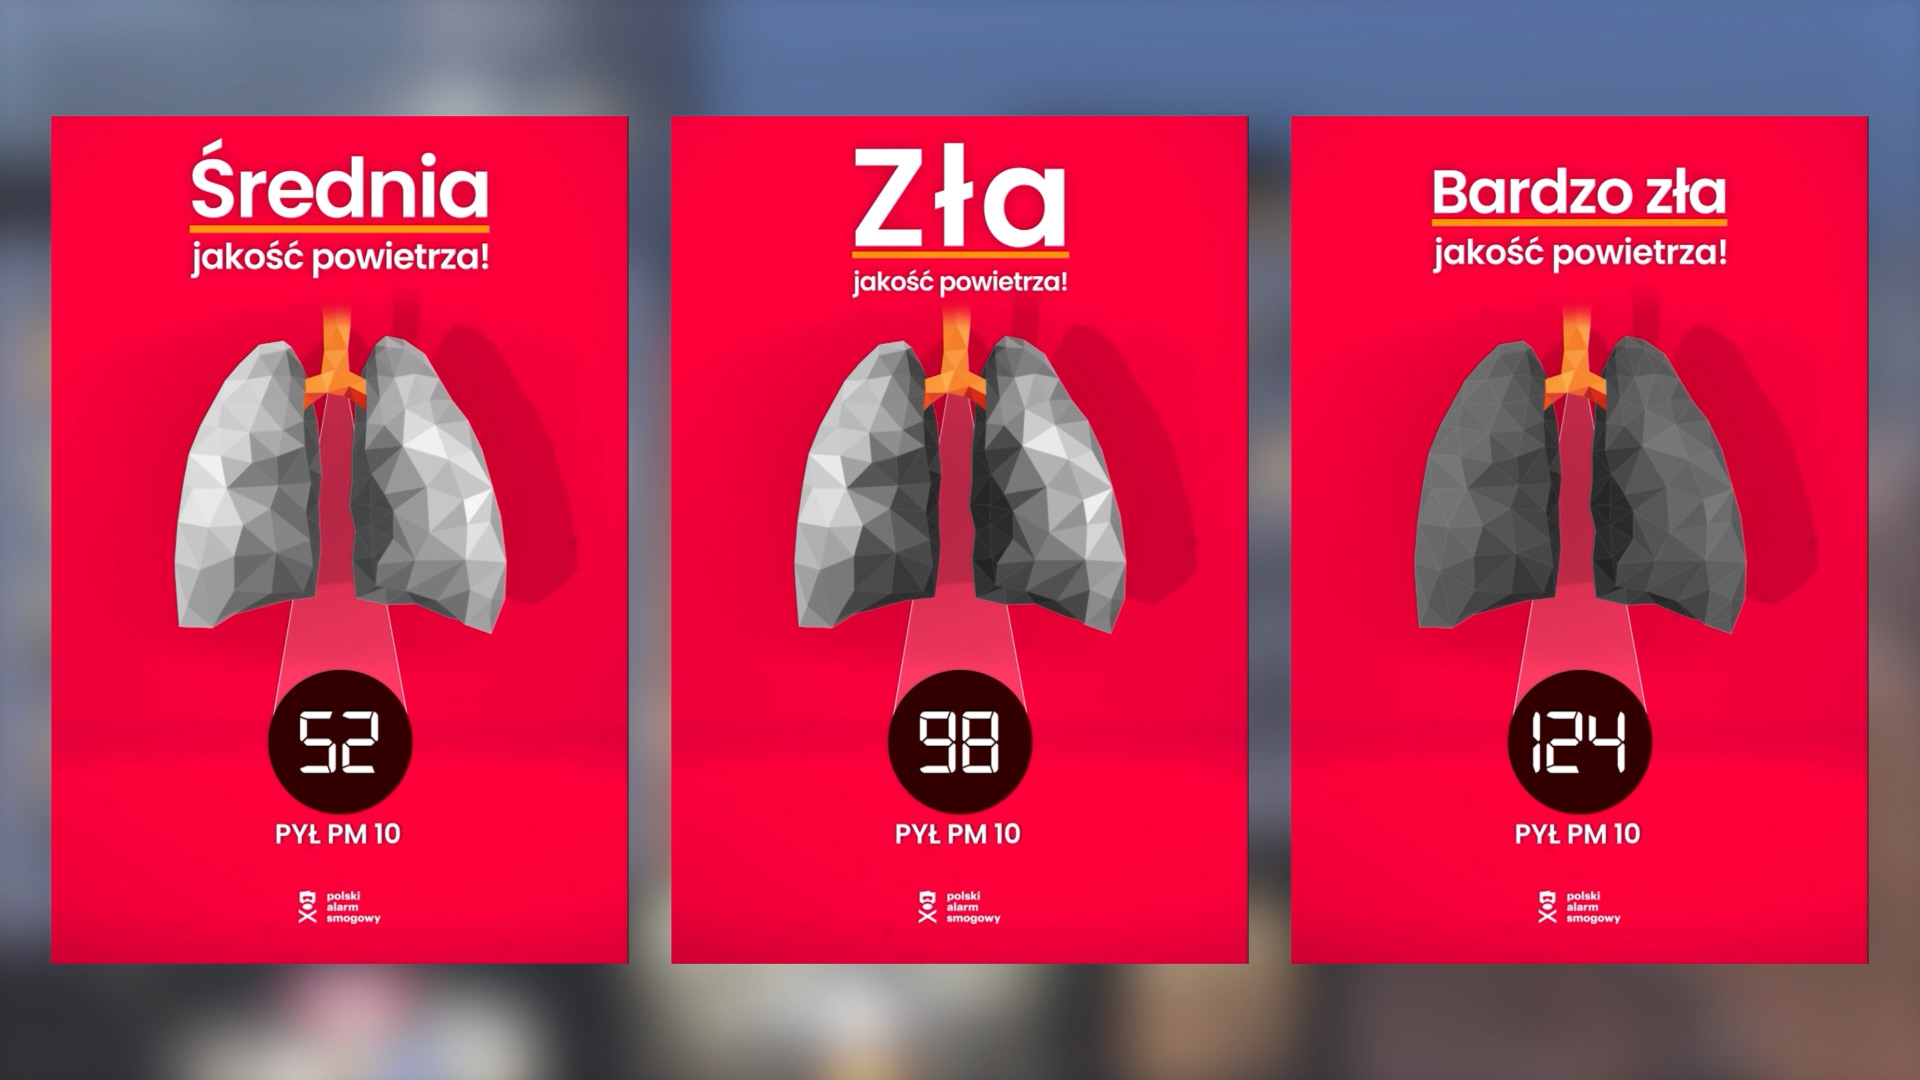 Wirtualne, kolorowe płuca powiadomią o złej jakości powietrza w Polsce